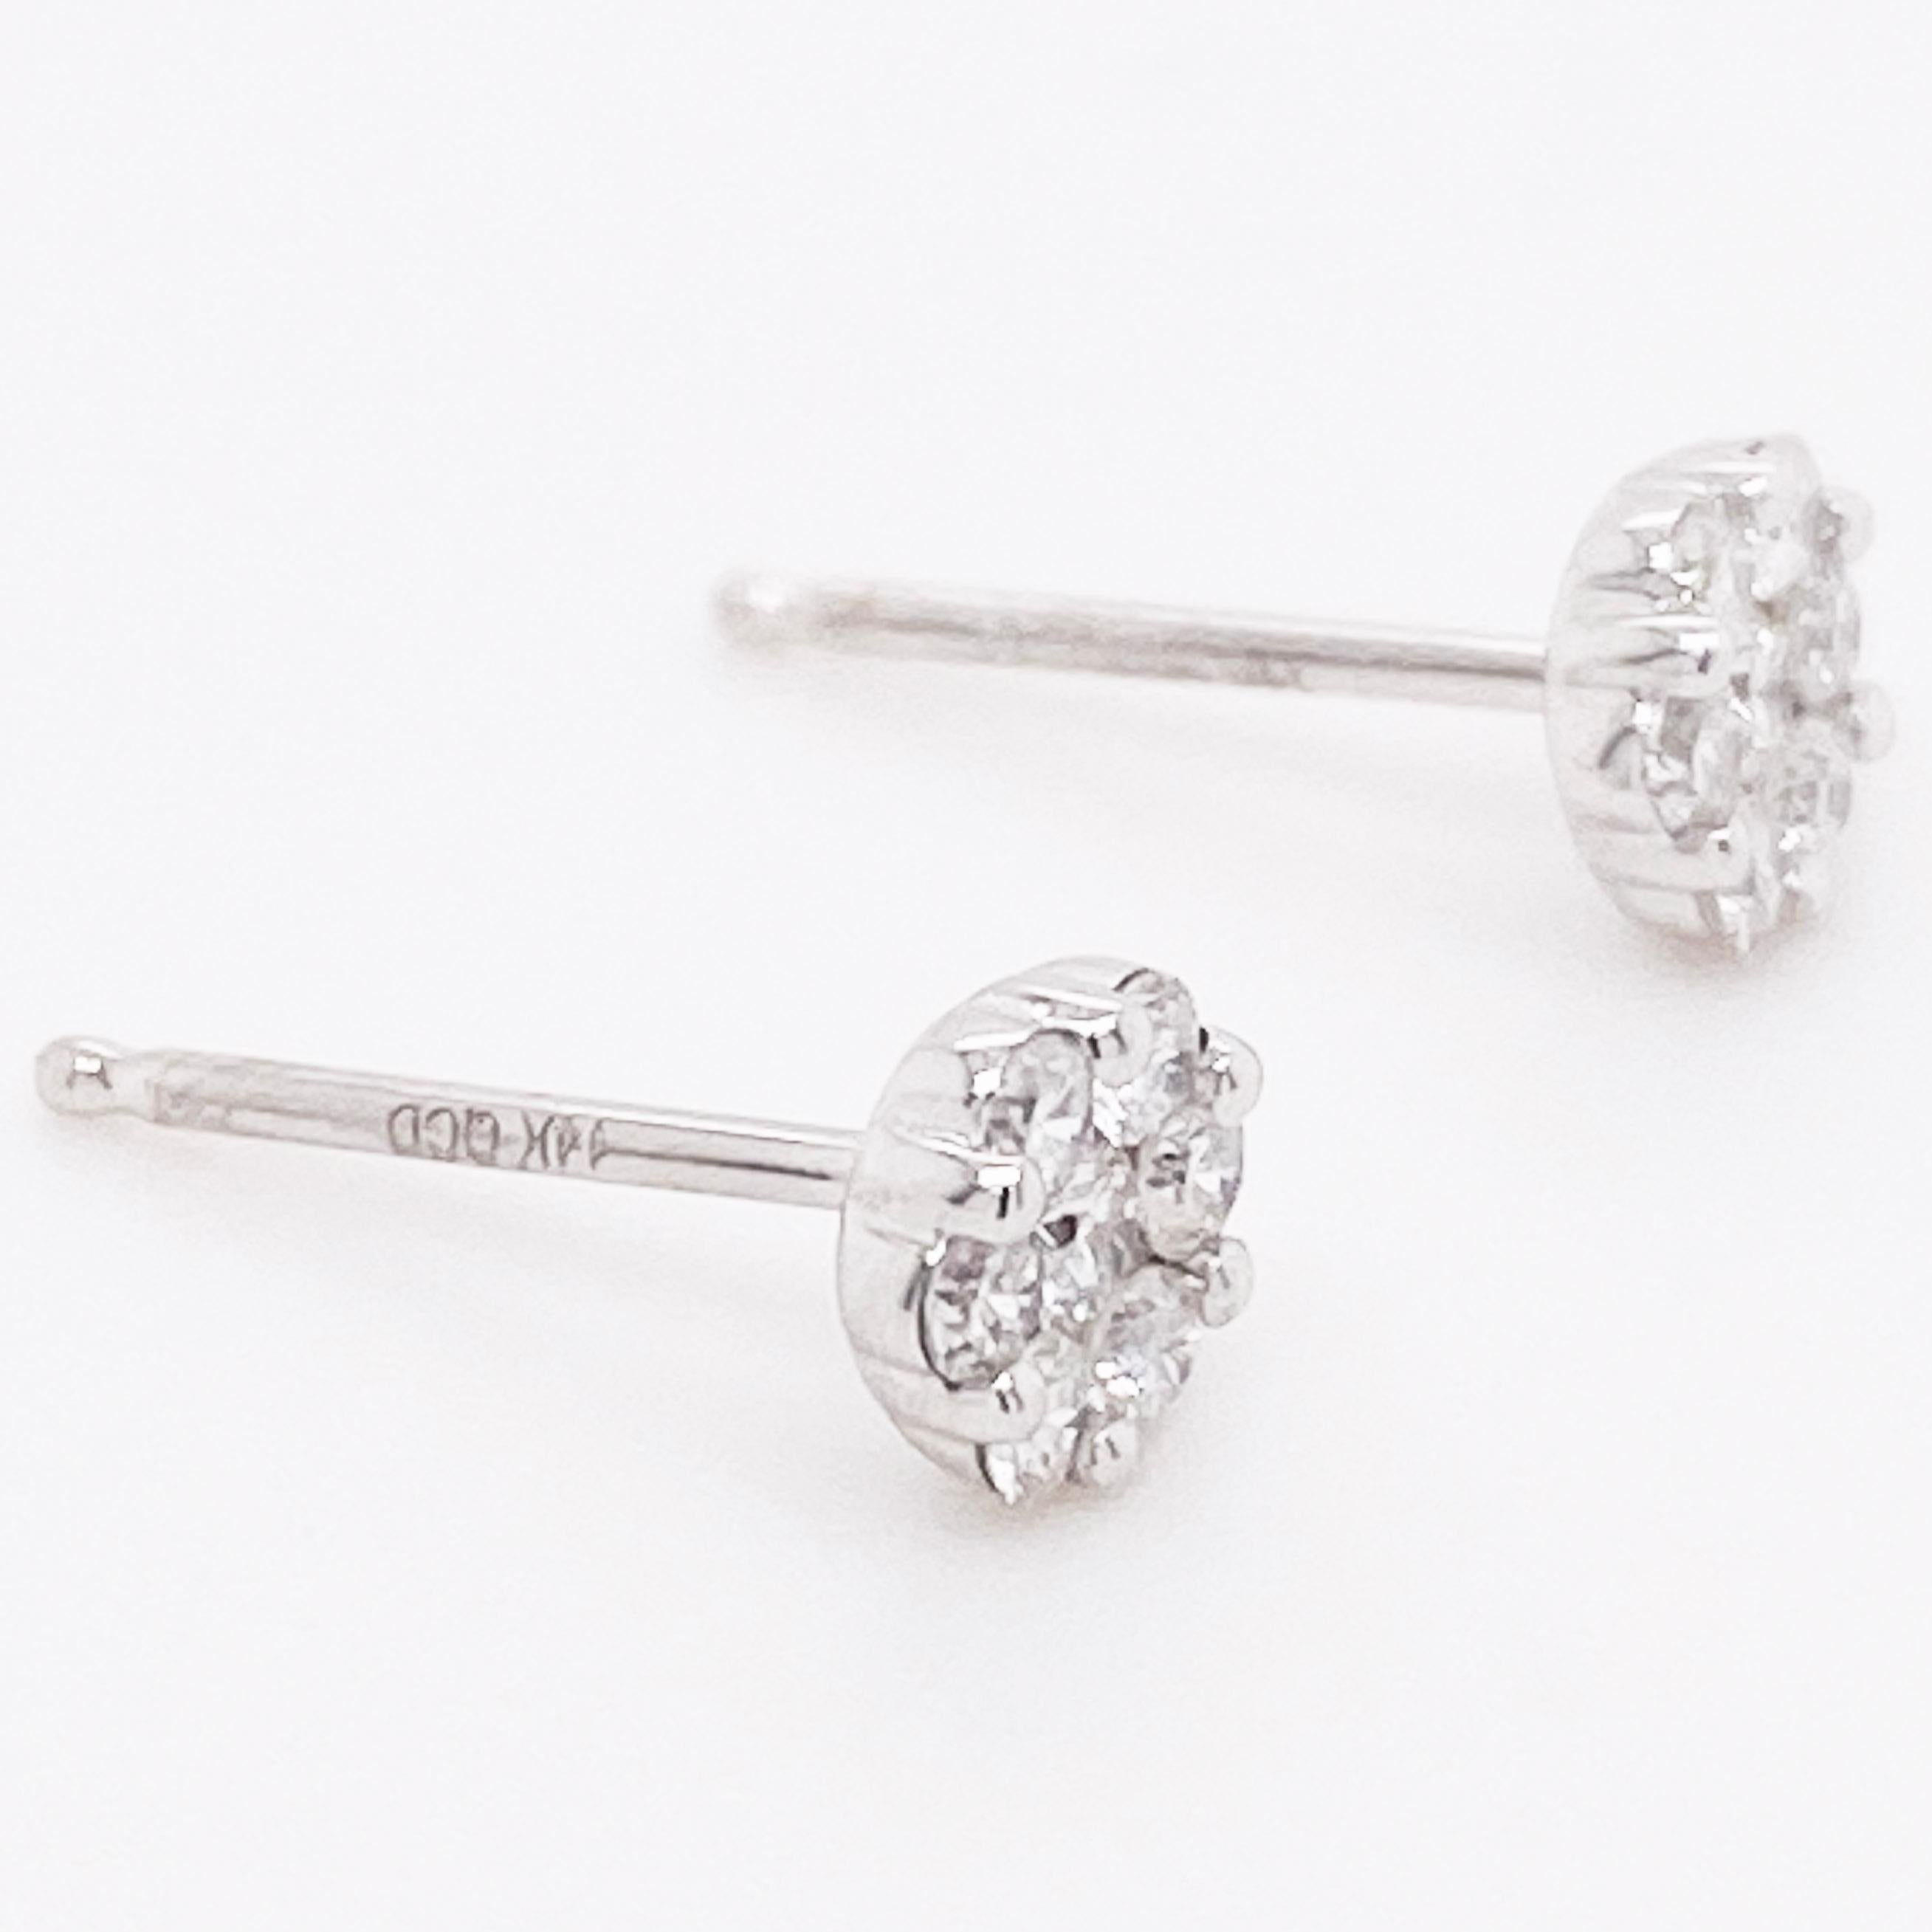 Diamond Cluster Earrings, White Gold Diamond Stud Earrings, Dainty Earrings In New Condition For Sale In Austin, TX